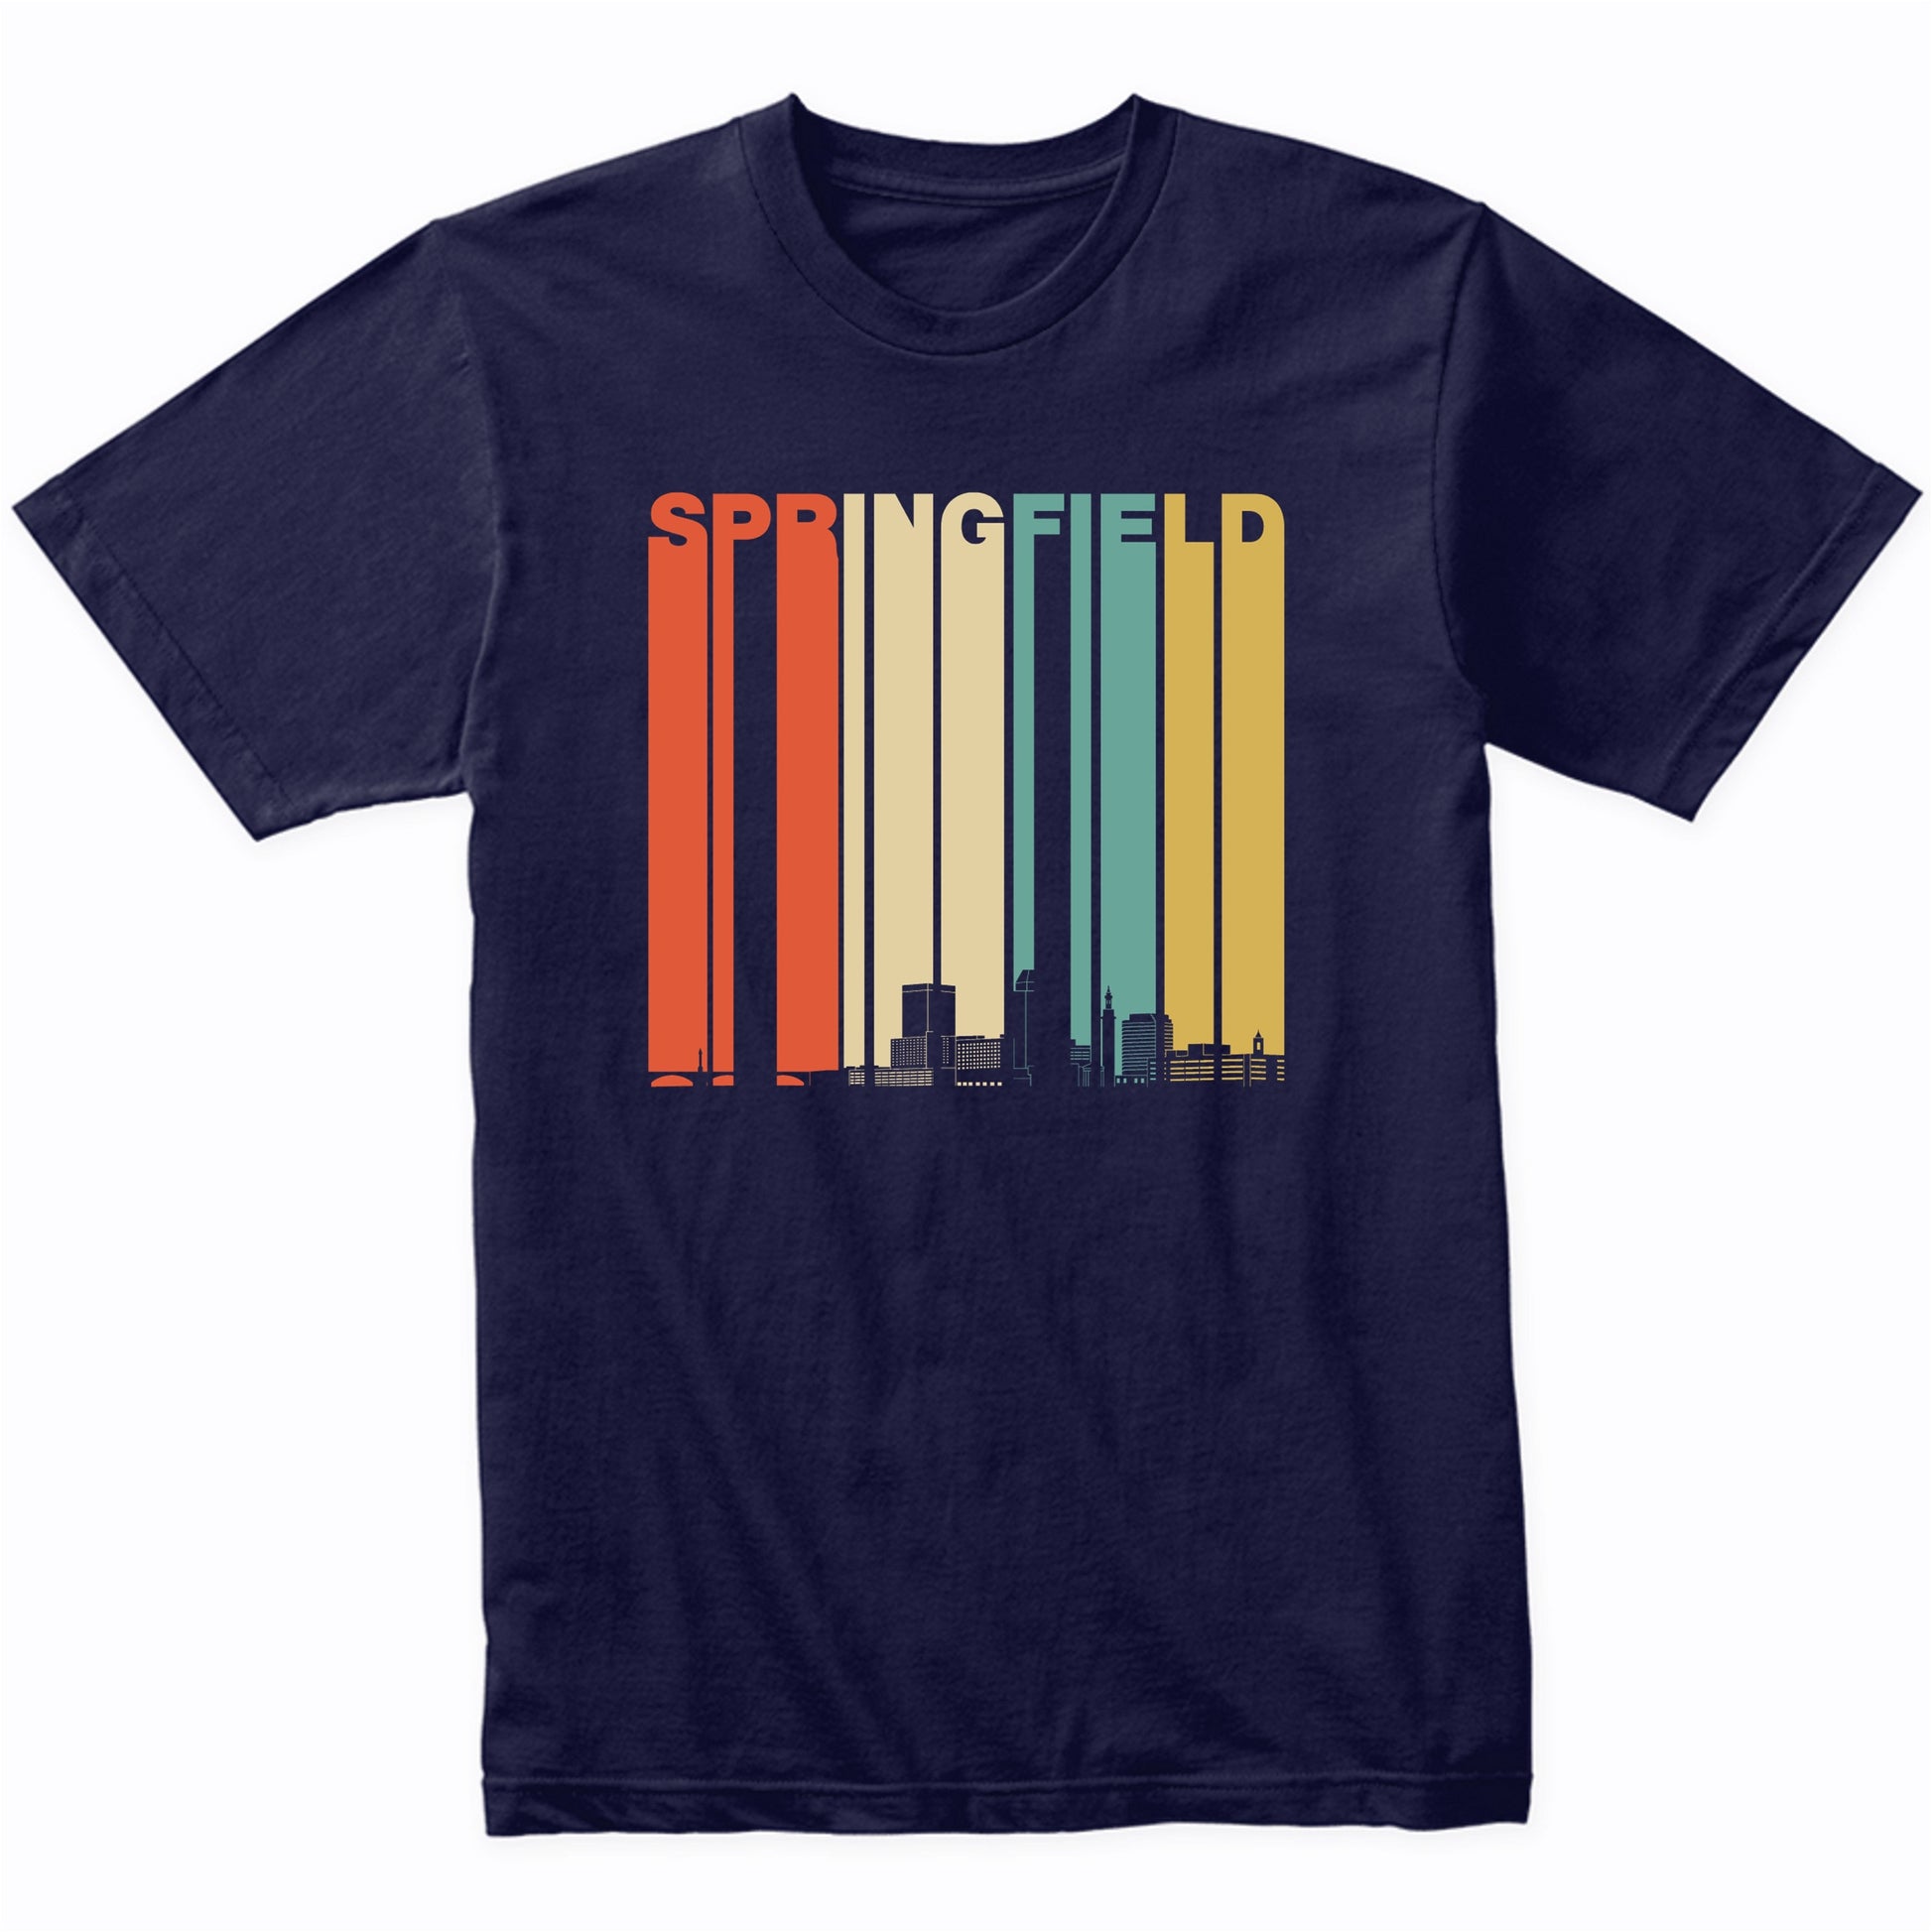 Vintage 1970's Style Springfield Massachusetts Skyline Shirt